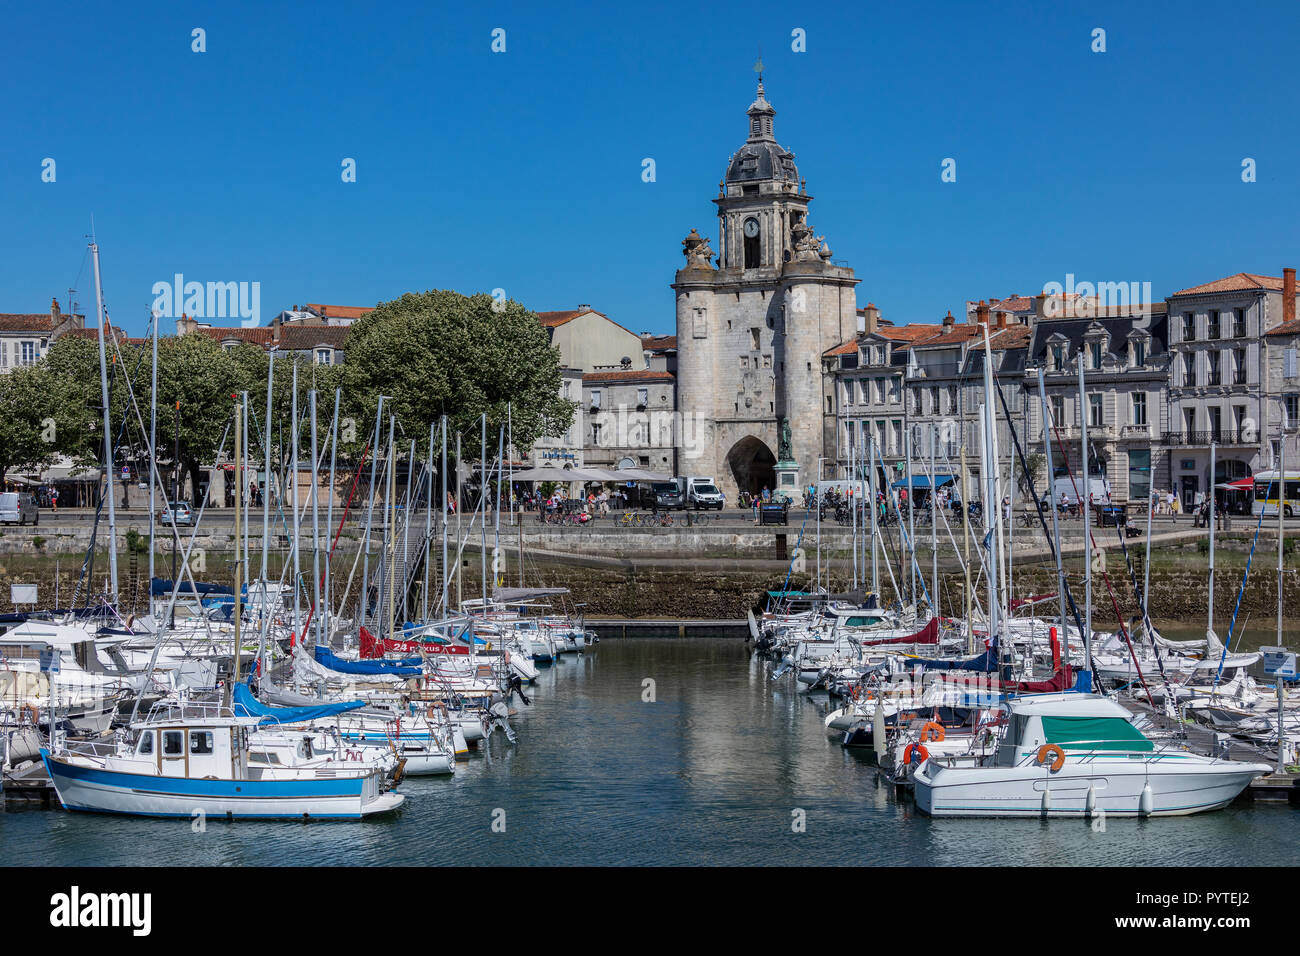 La grosse Horloge porte dans le Vieux Port de La Rochelle en Charente-Maritime. Banque D'Images